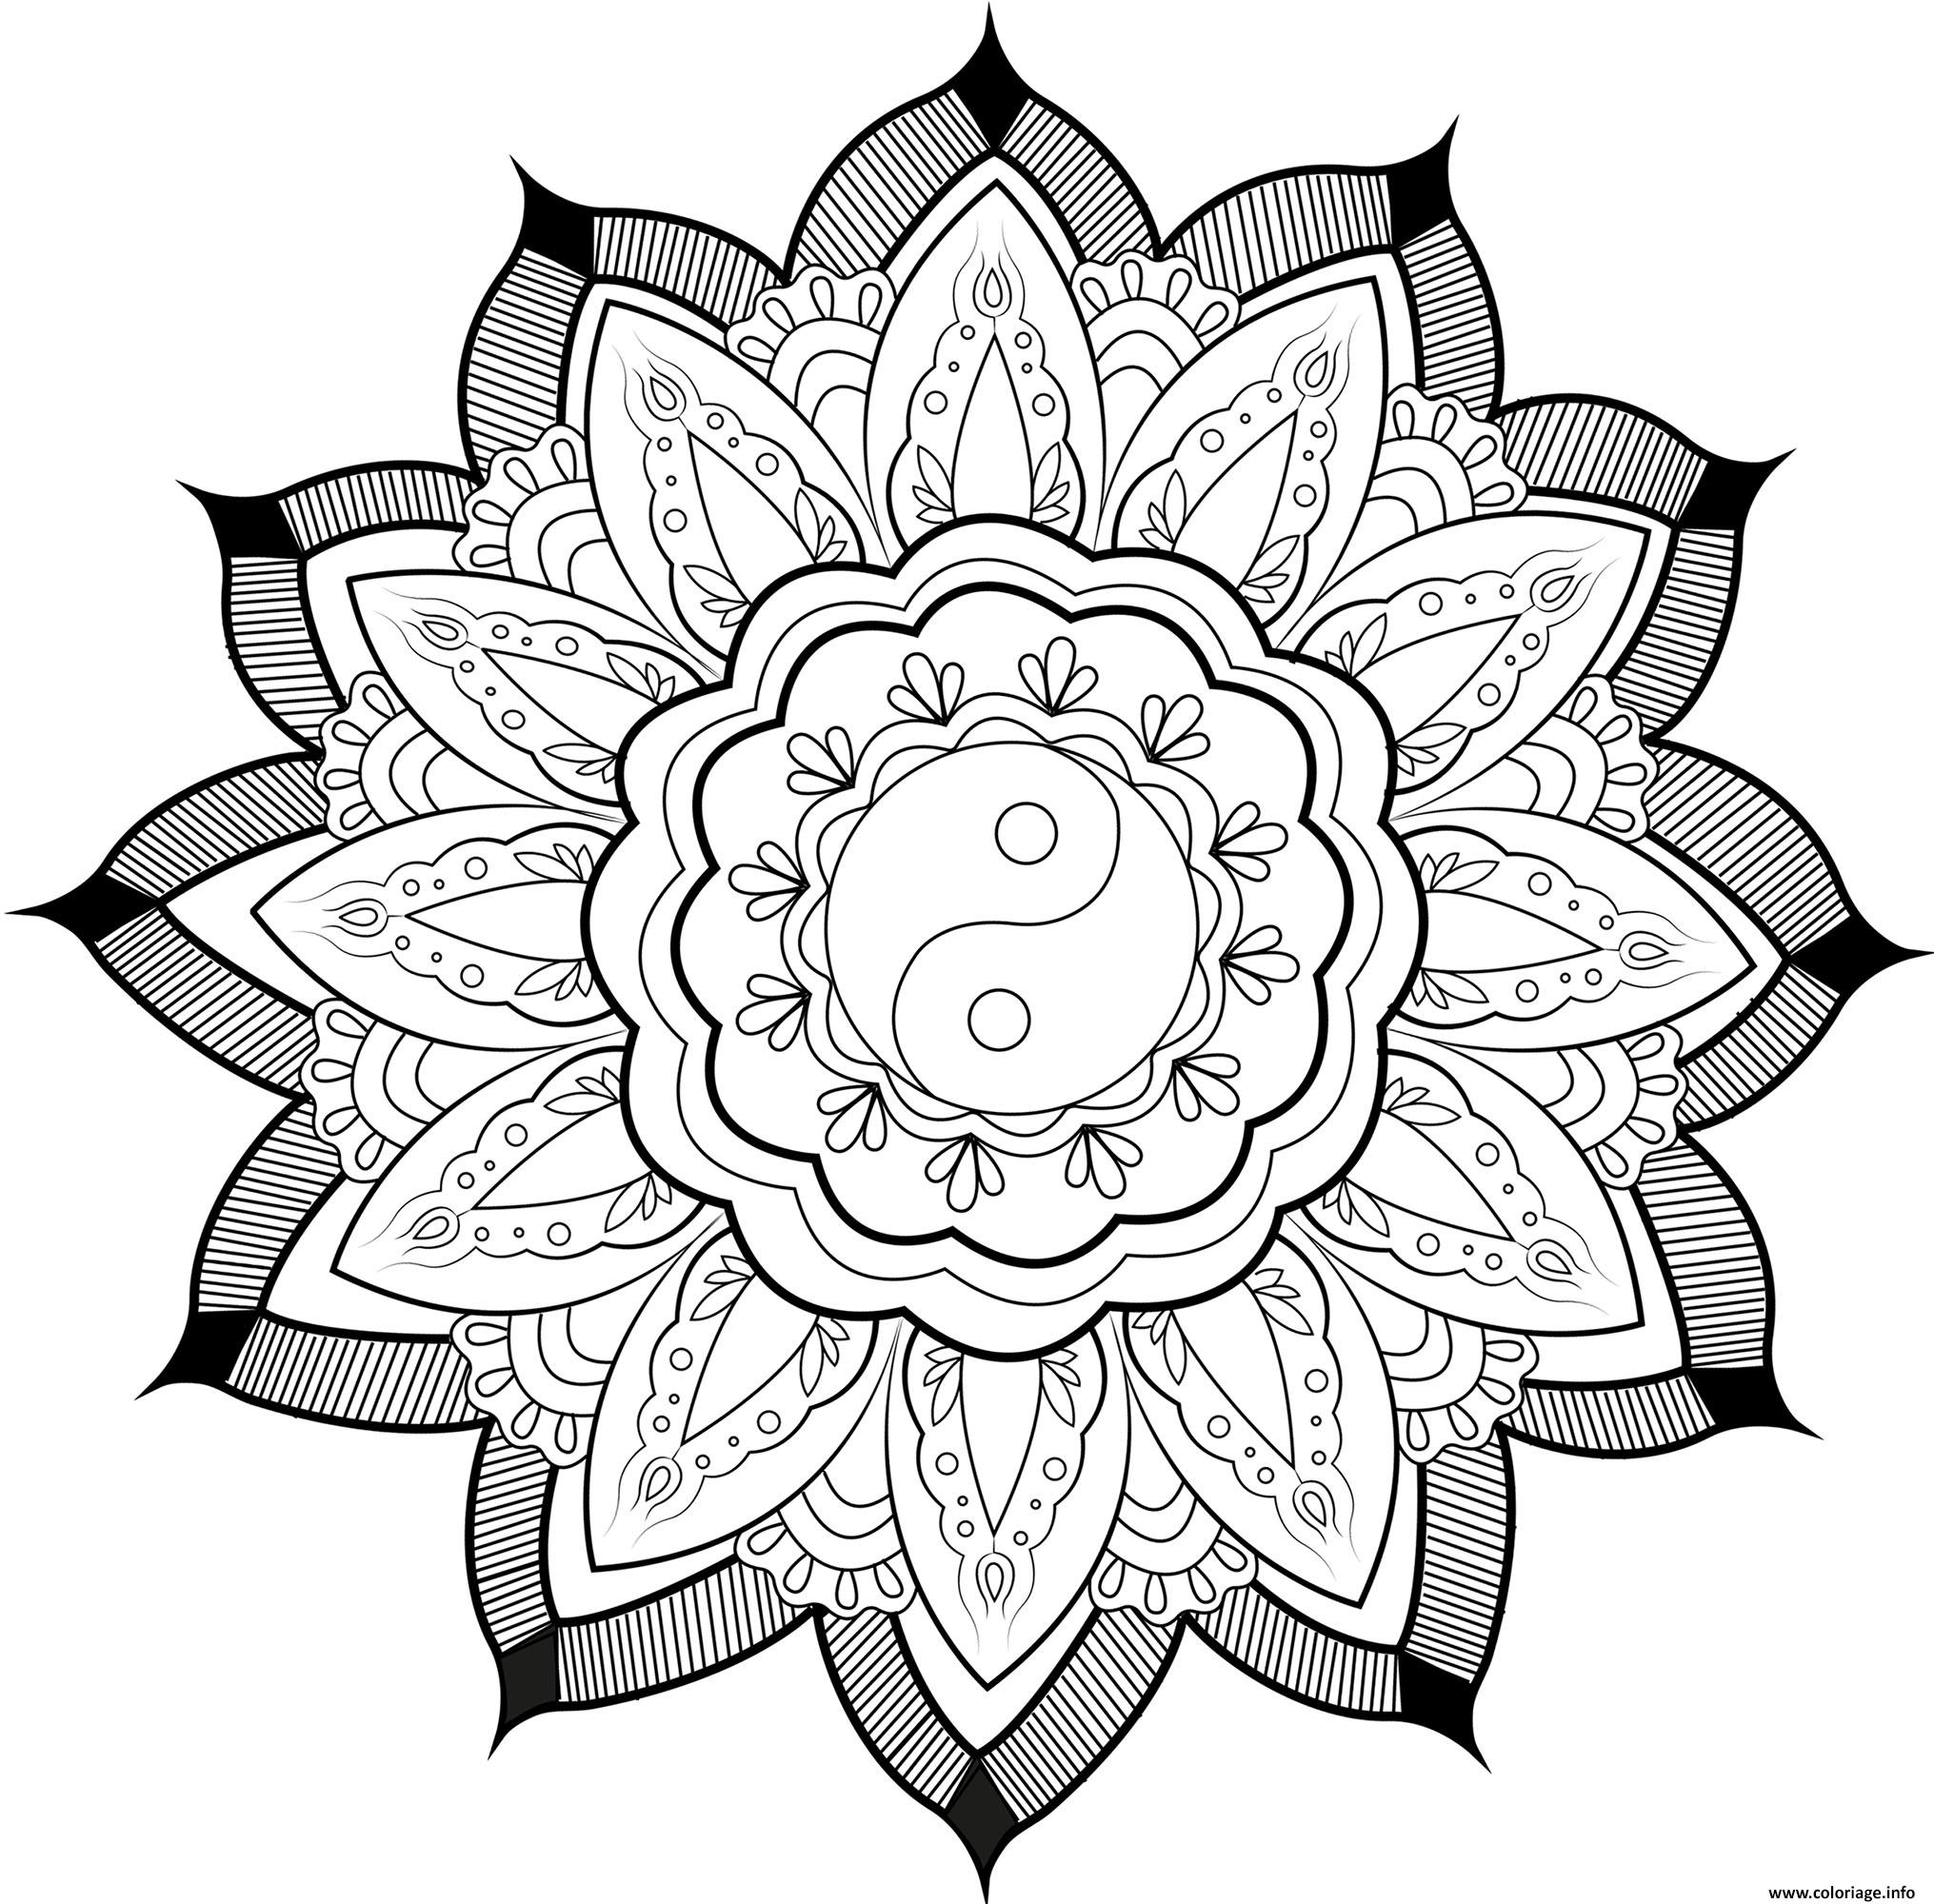 Dessin mandala yin yang et feuilles par arwen Coloriage Gratuit à Imprimer